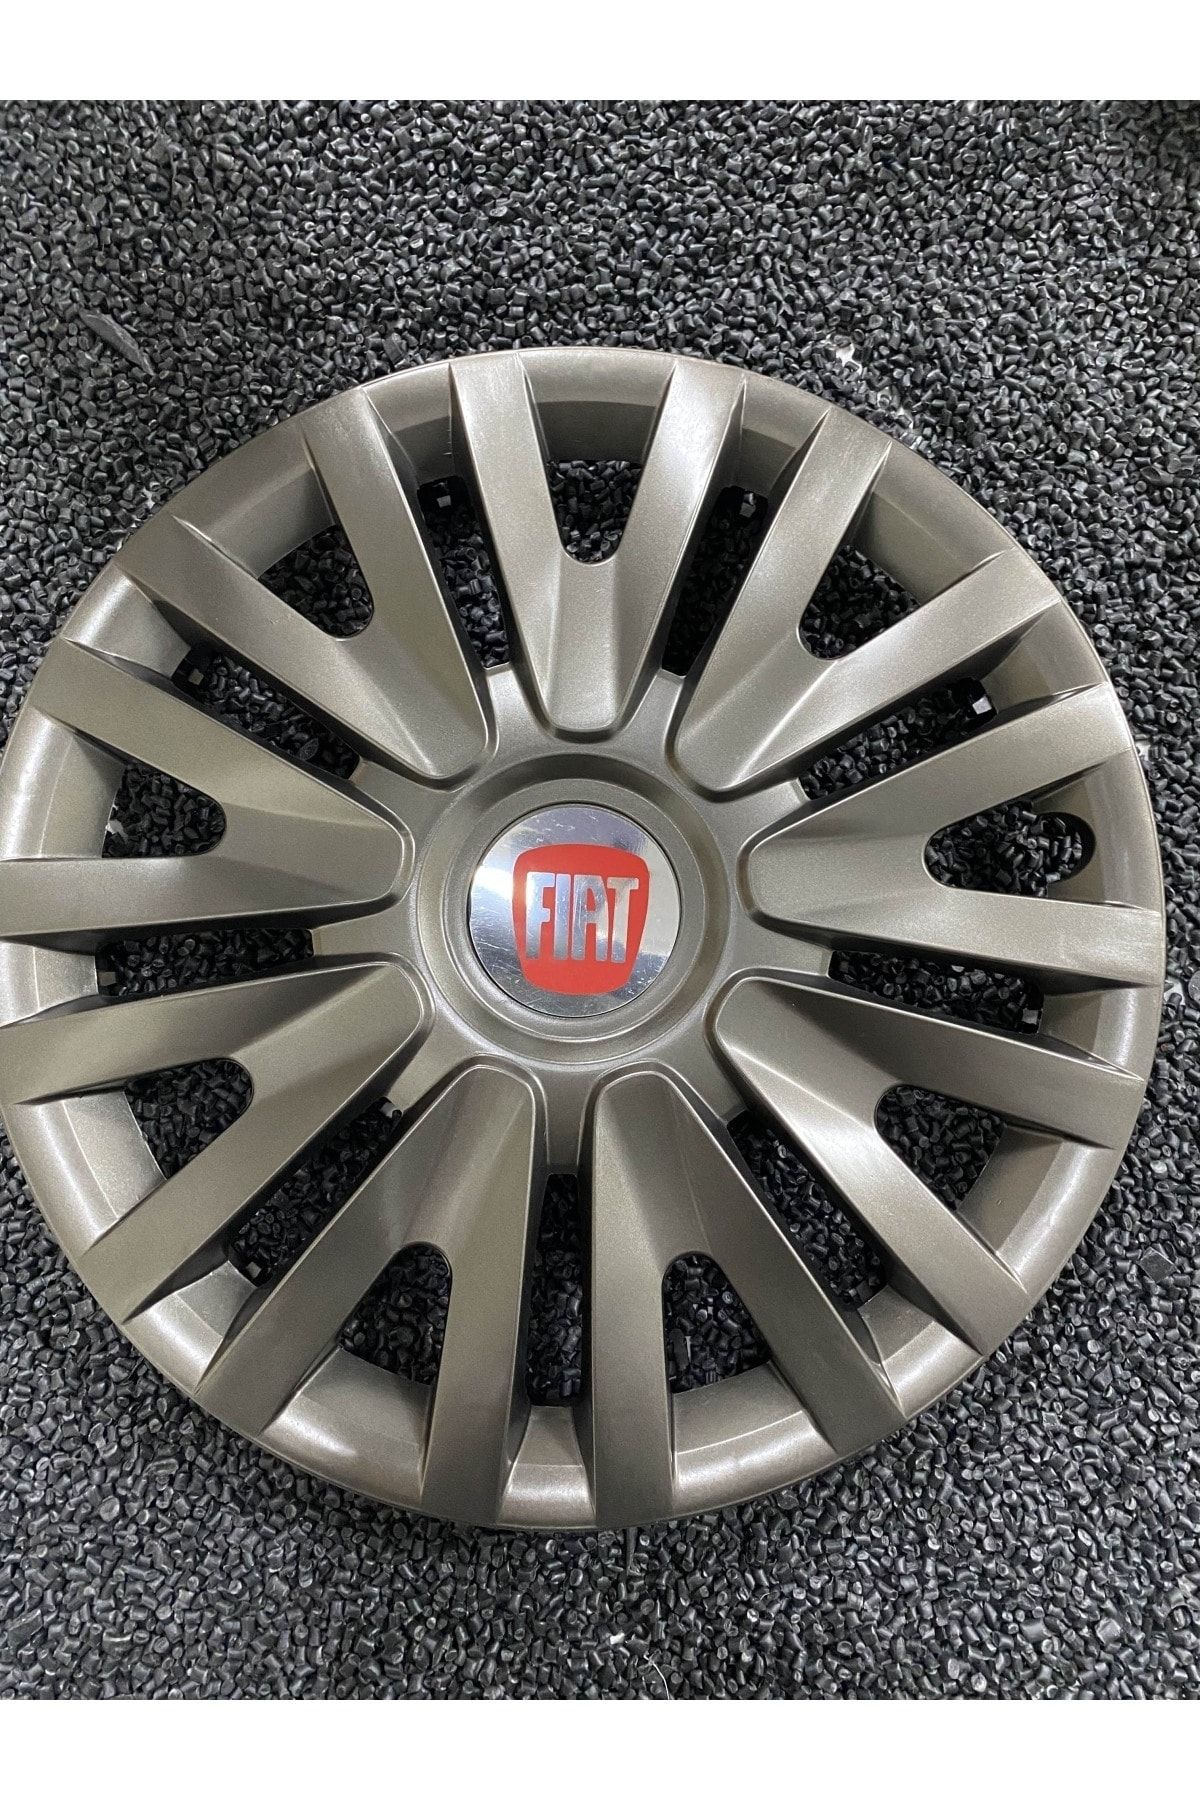 YILAPJANT 15 Inç Fiat Punto Jant Kapağı Füme 4 Adet